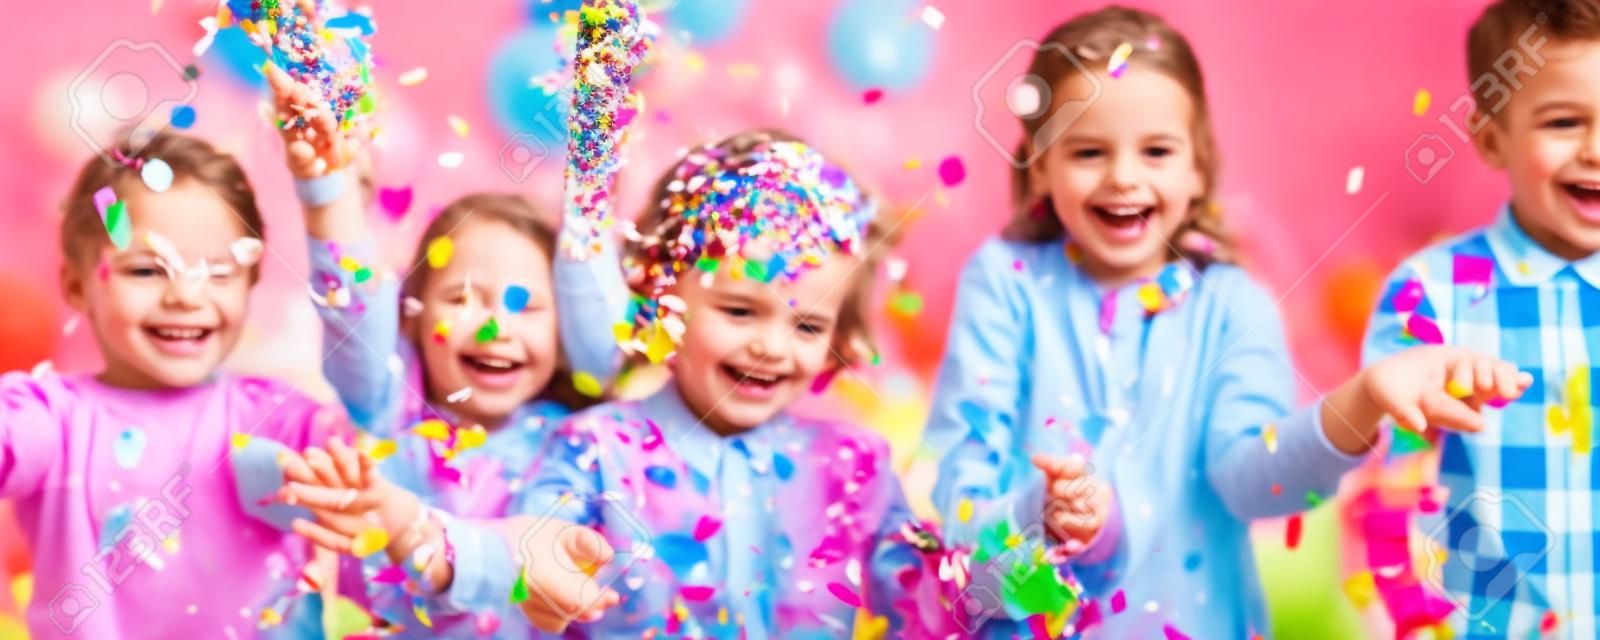 Uśmiechnięci dzieciaki bawić się z confetti przy przyjęciem urodzinowym